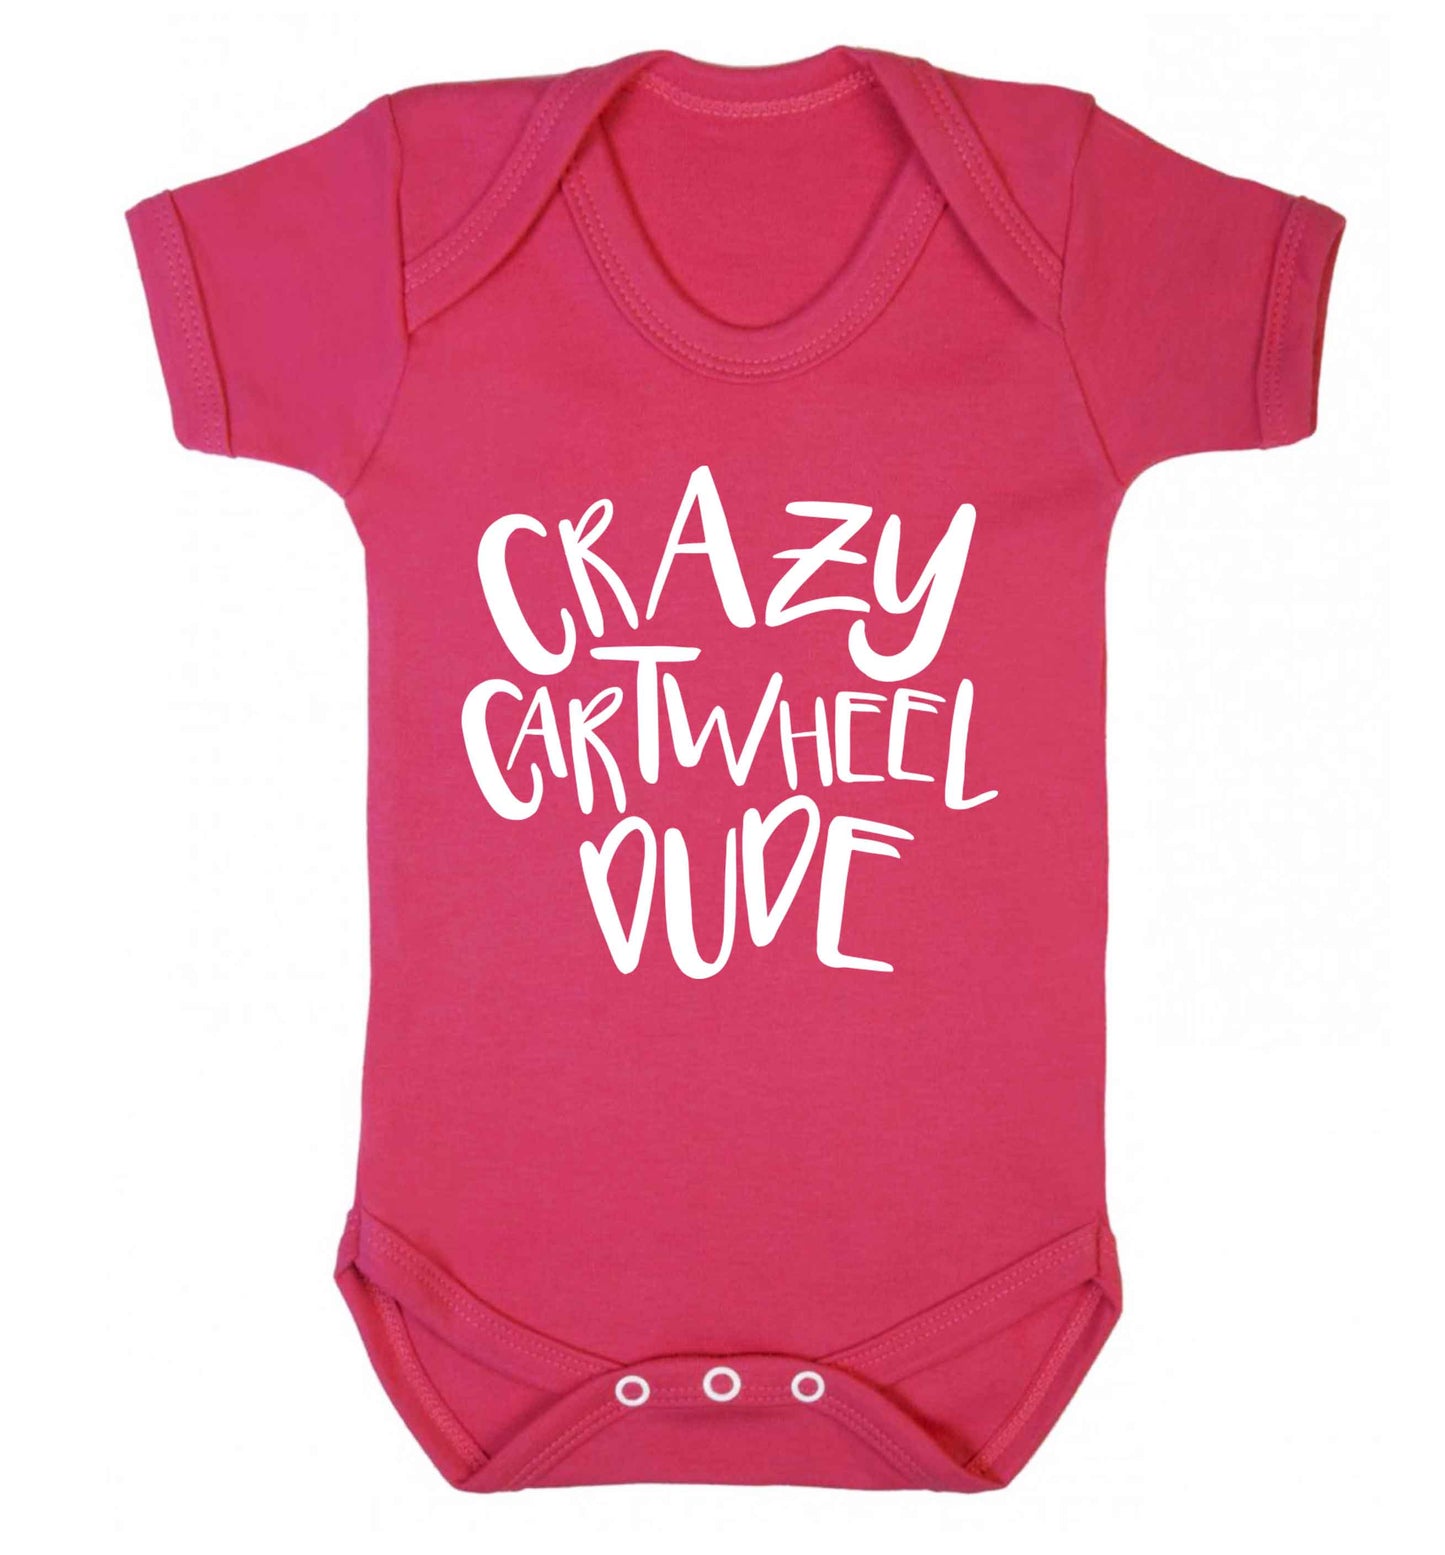 Crazy cartwheel dude Baby Vest dark pink 18-24 months